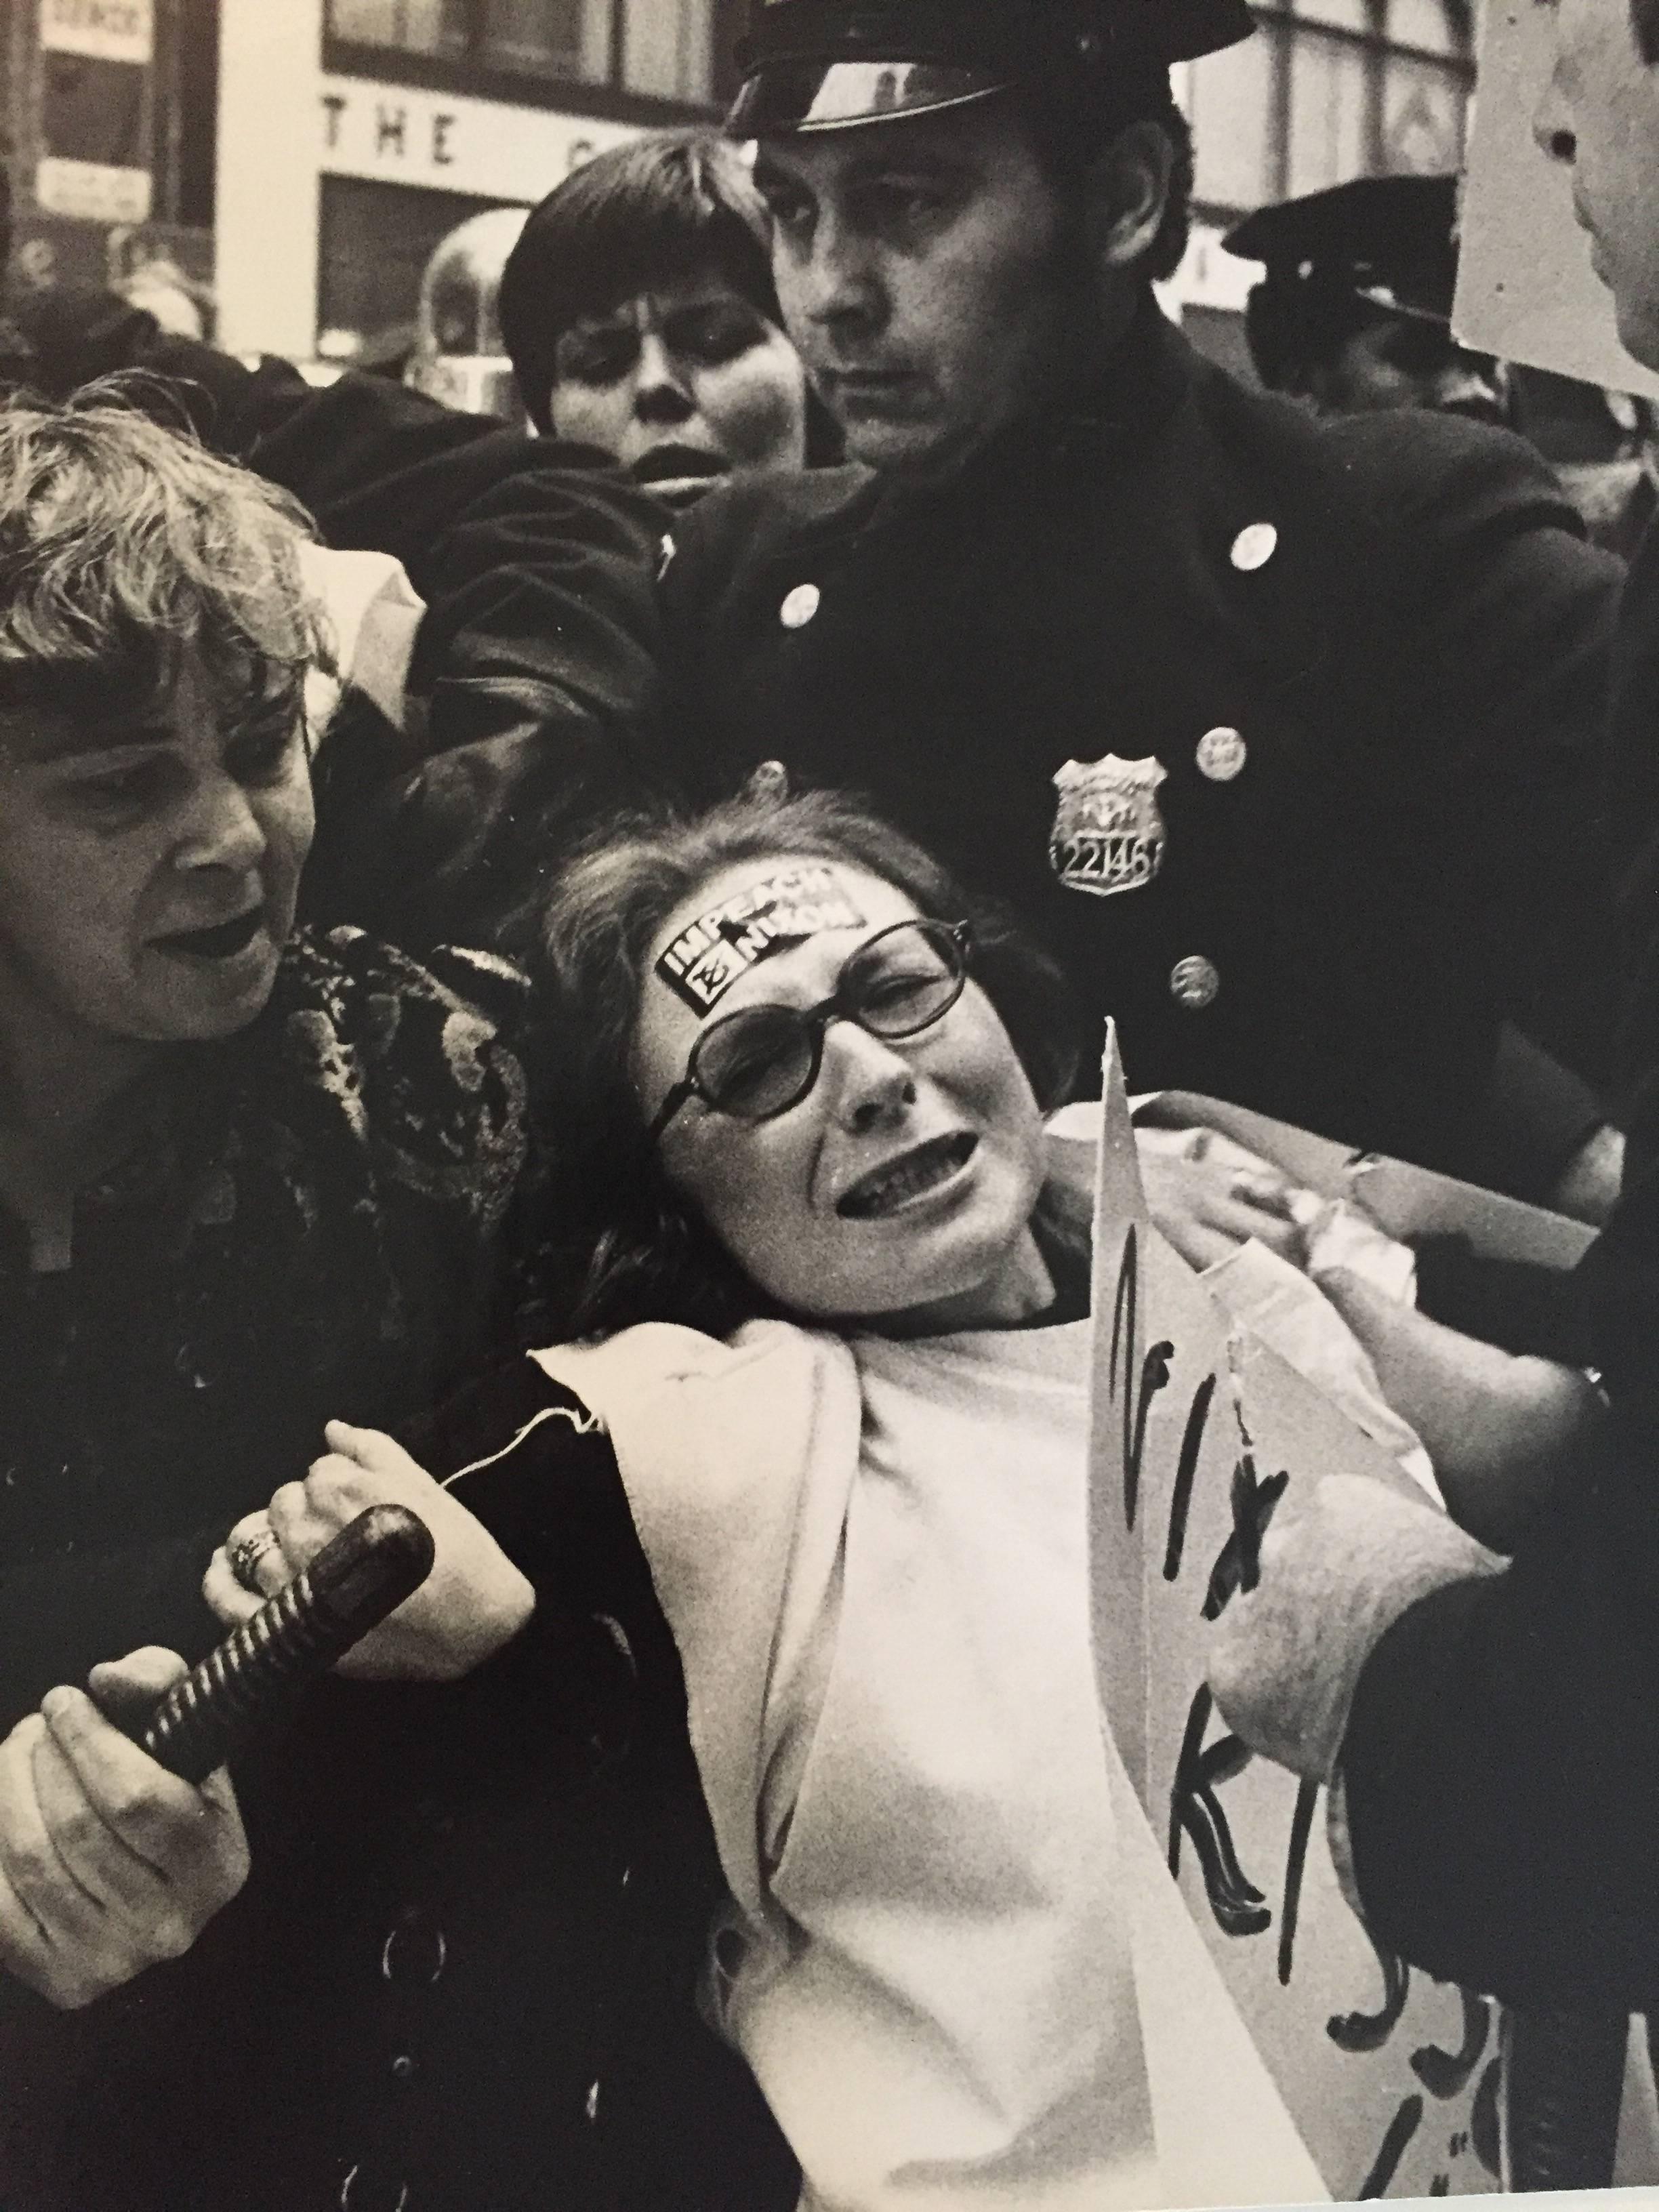 Feministinnen protestieren gegen den Vietnamkrieg – Photograph von Fred McDarrah